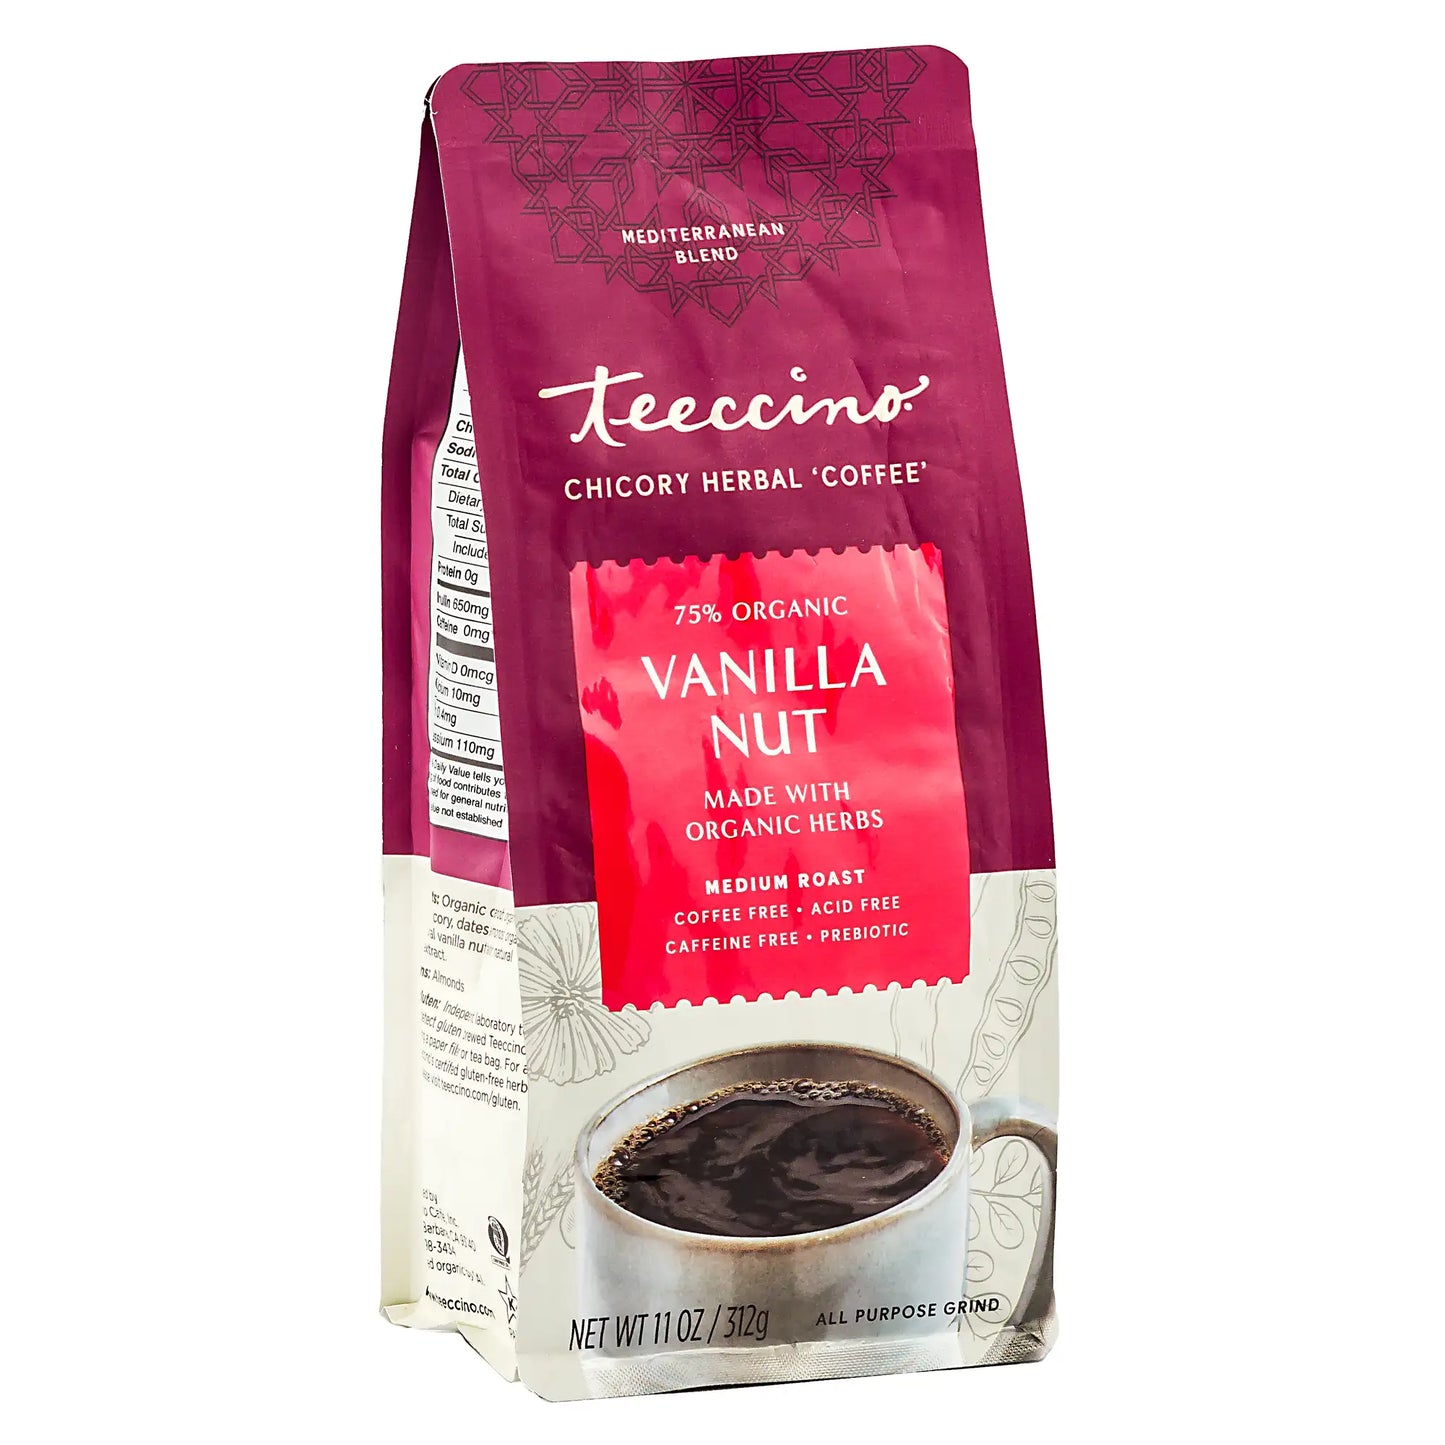 Vanilla Nut Chicory Herbal Coffee